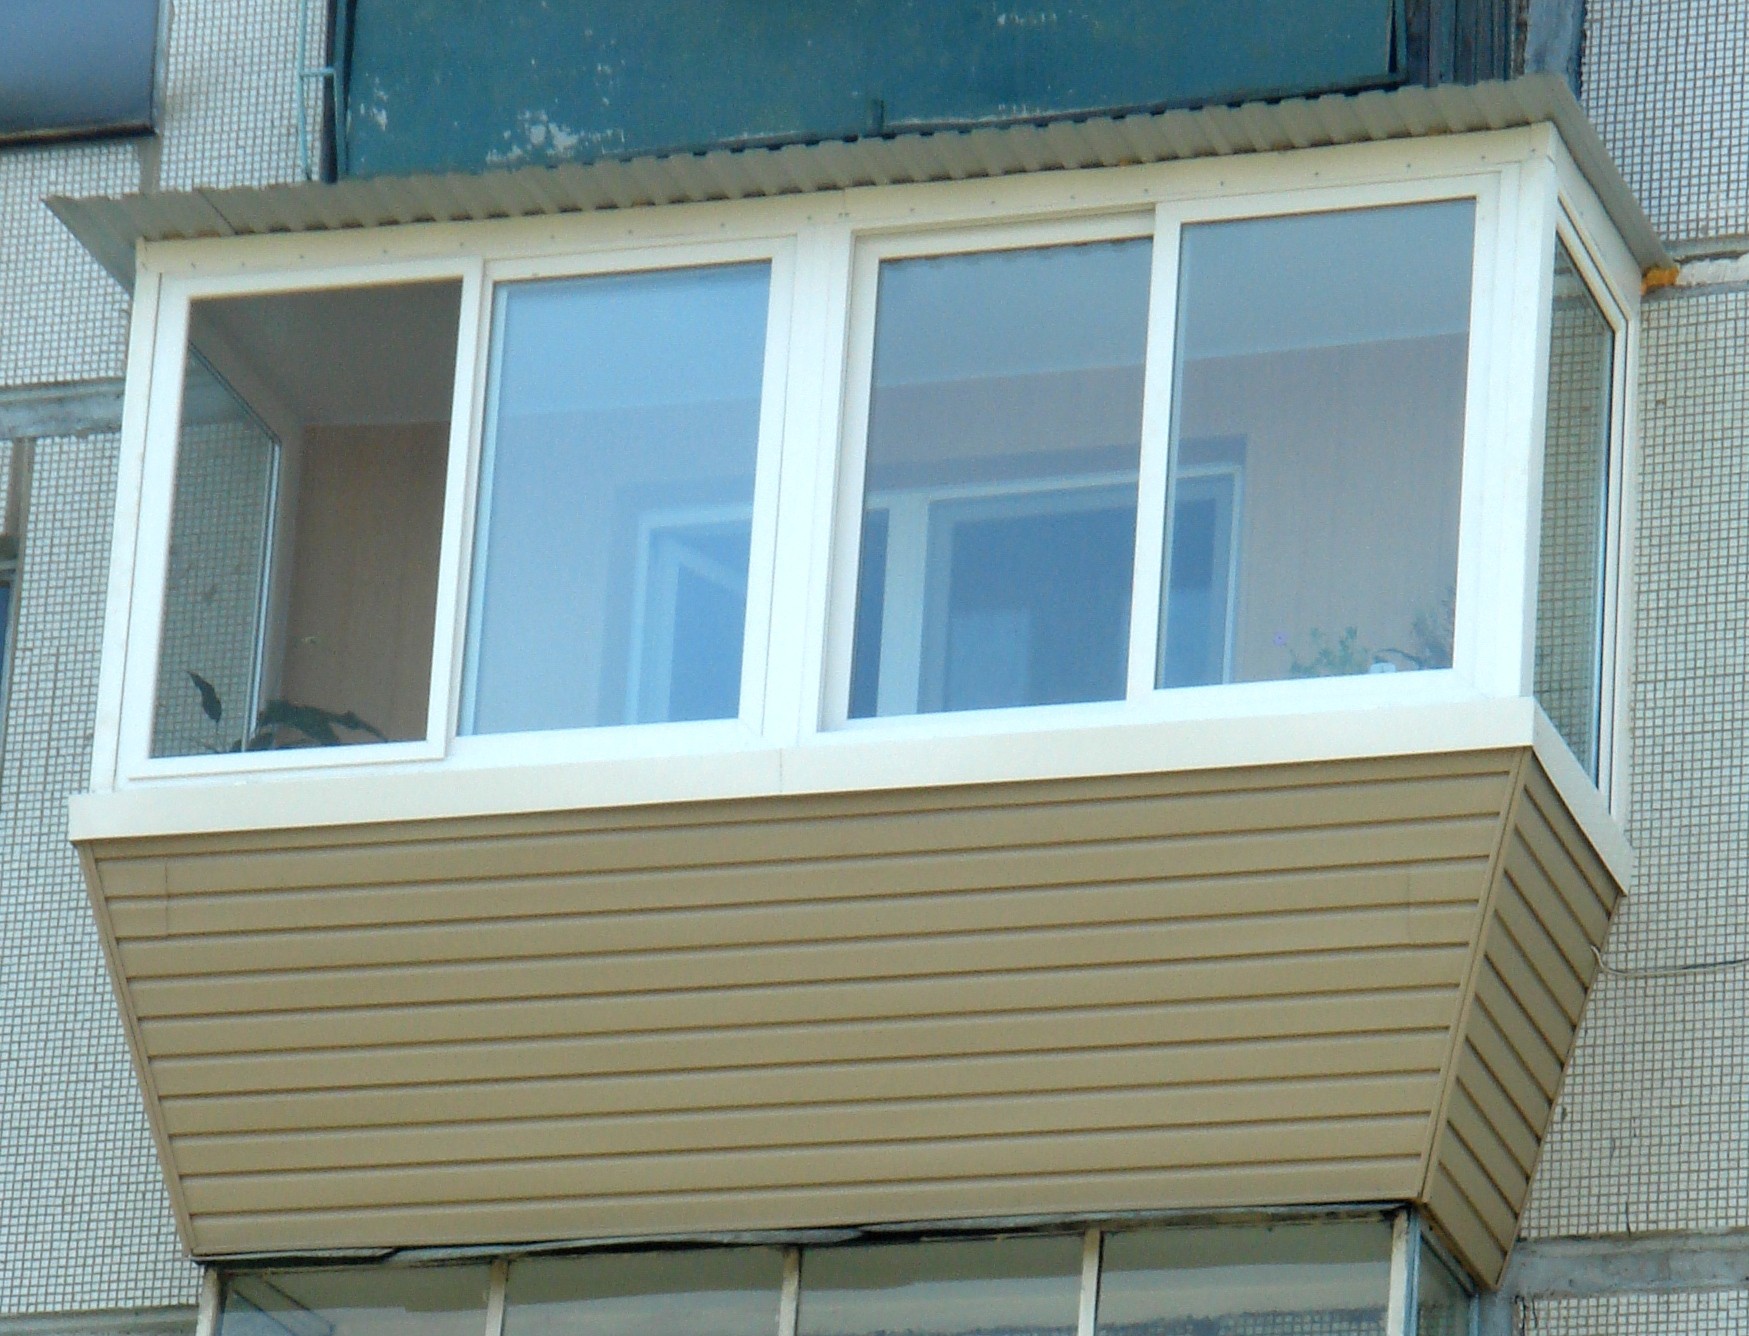 балкон с выносом